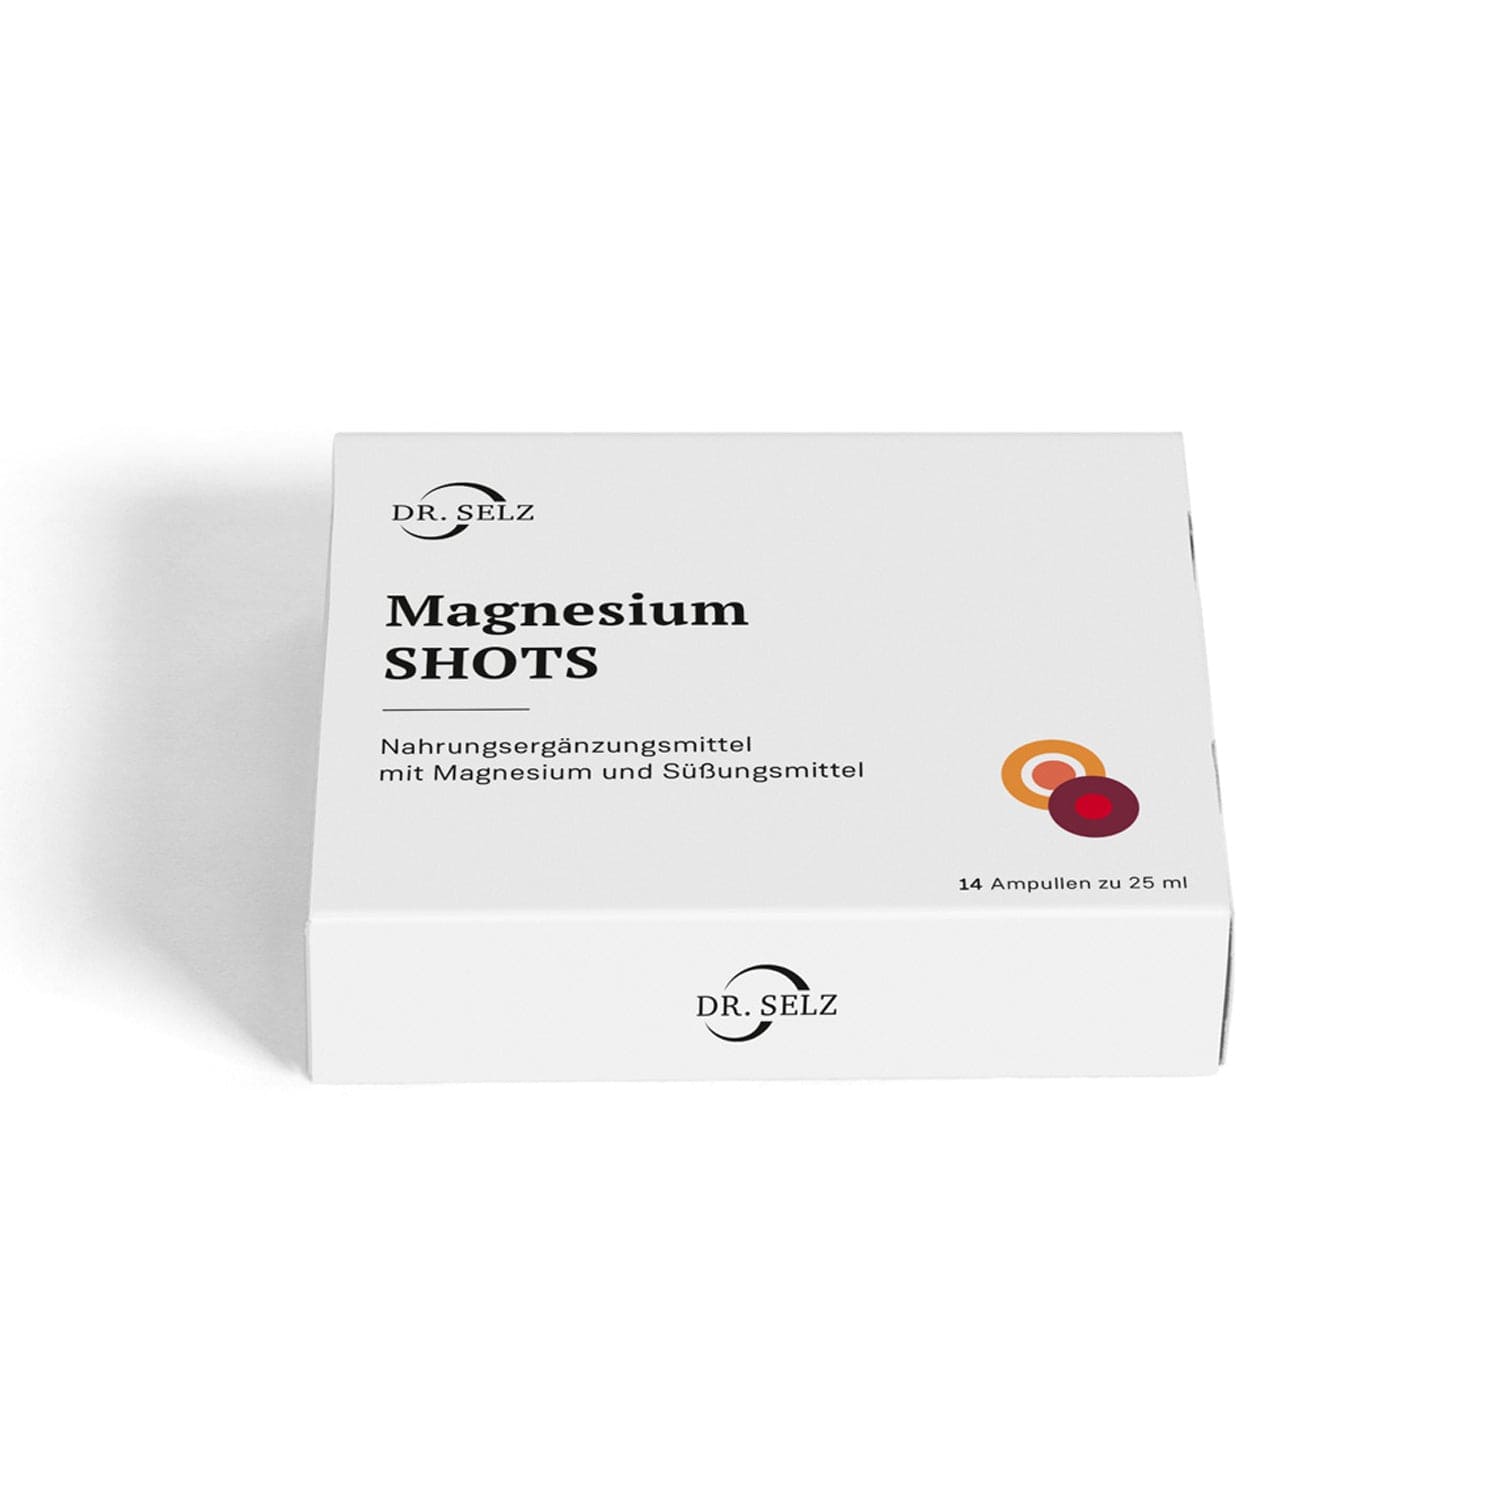 Magnesium shots